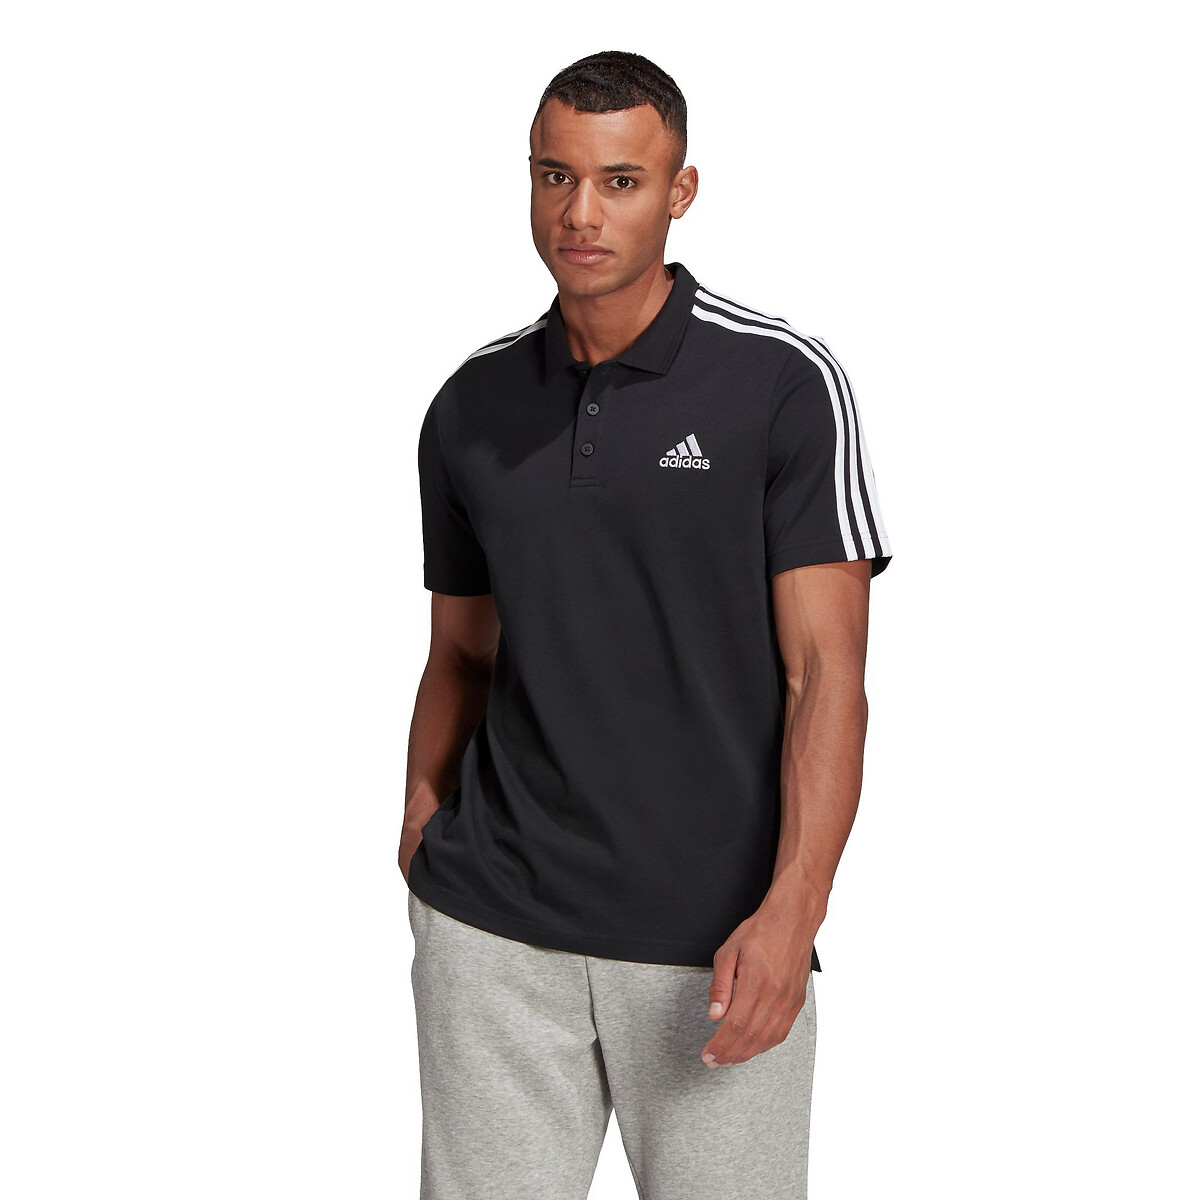 Poloshirt, kurze Ärmel mit 3 Stripes von adidas performance